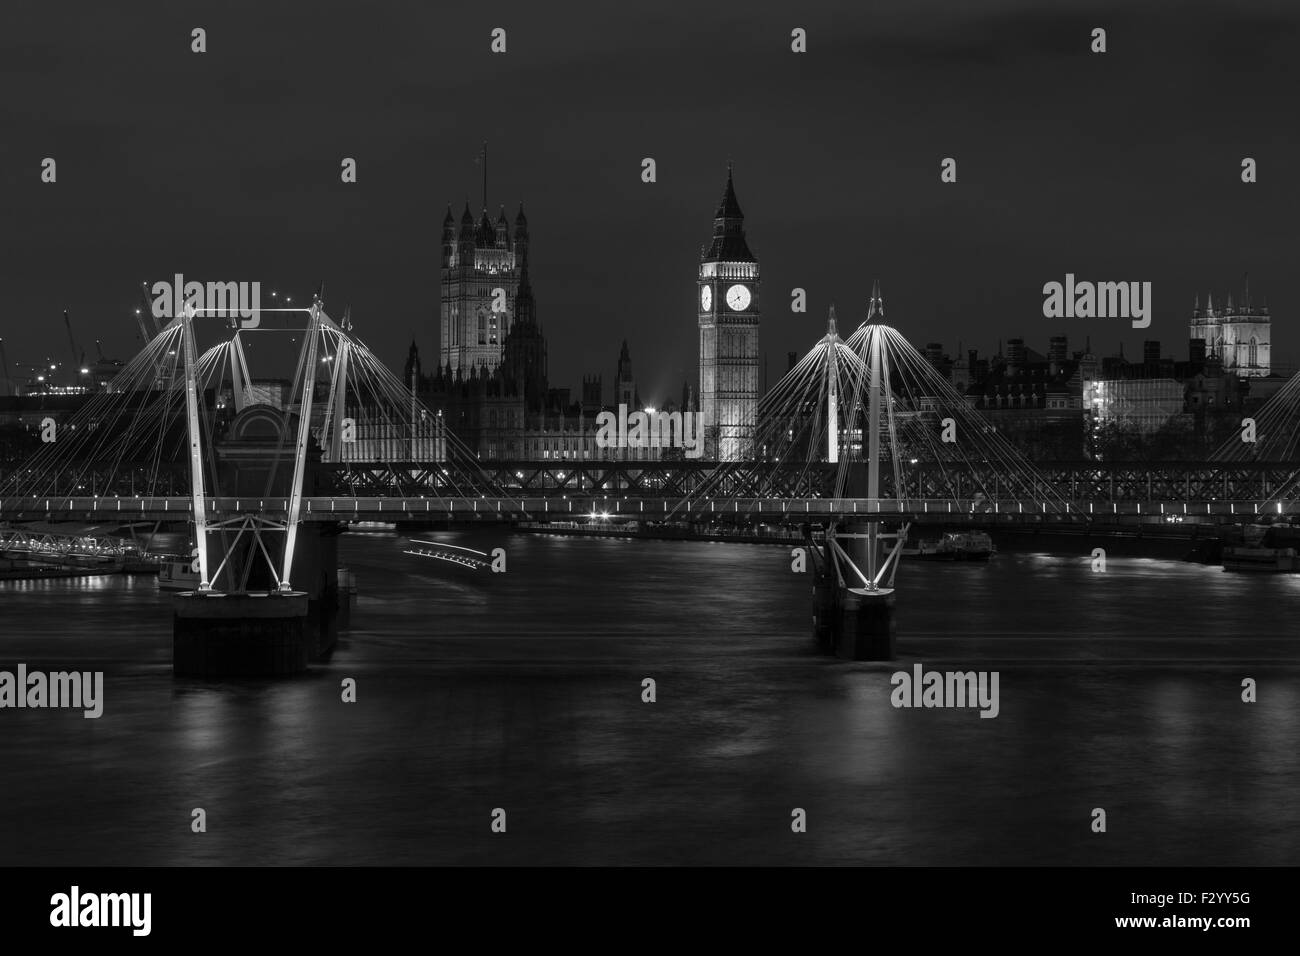 Dans la nuit de Westminster sur la Tamise en noir et blanc. Partie de Jubilee/Hungerford Bridge peut être vu dans la foreg Banque D'Images